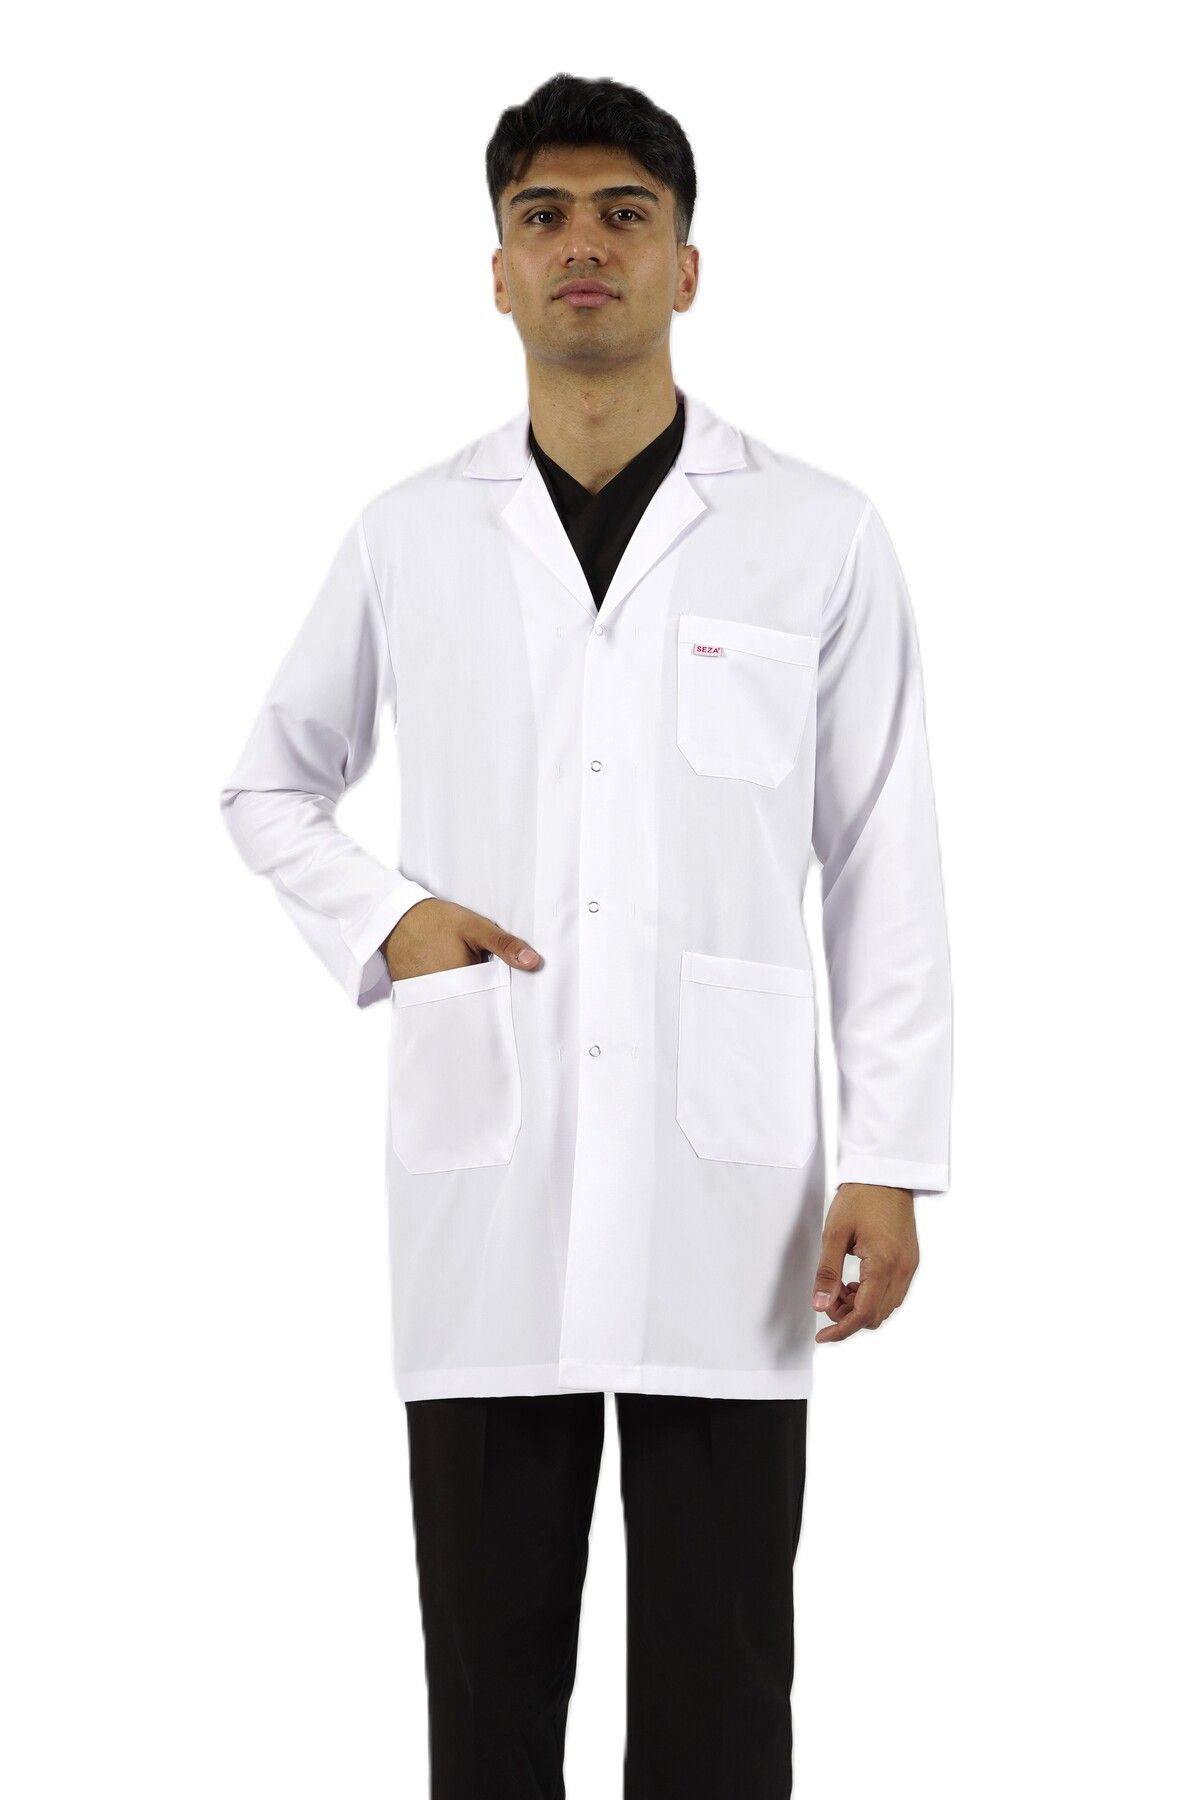 SEZA TEKSTİL Gömlek Yaka Orta Boy Beyaz Erkek Doktor Öğretmen Hemşire Laboratuvar Önlüğü